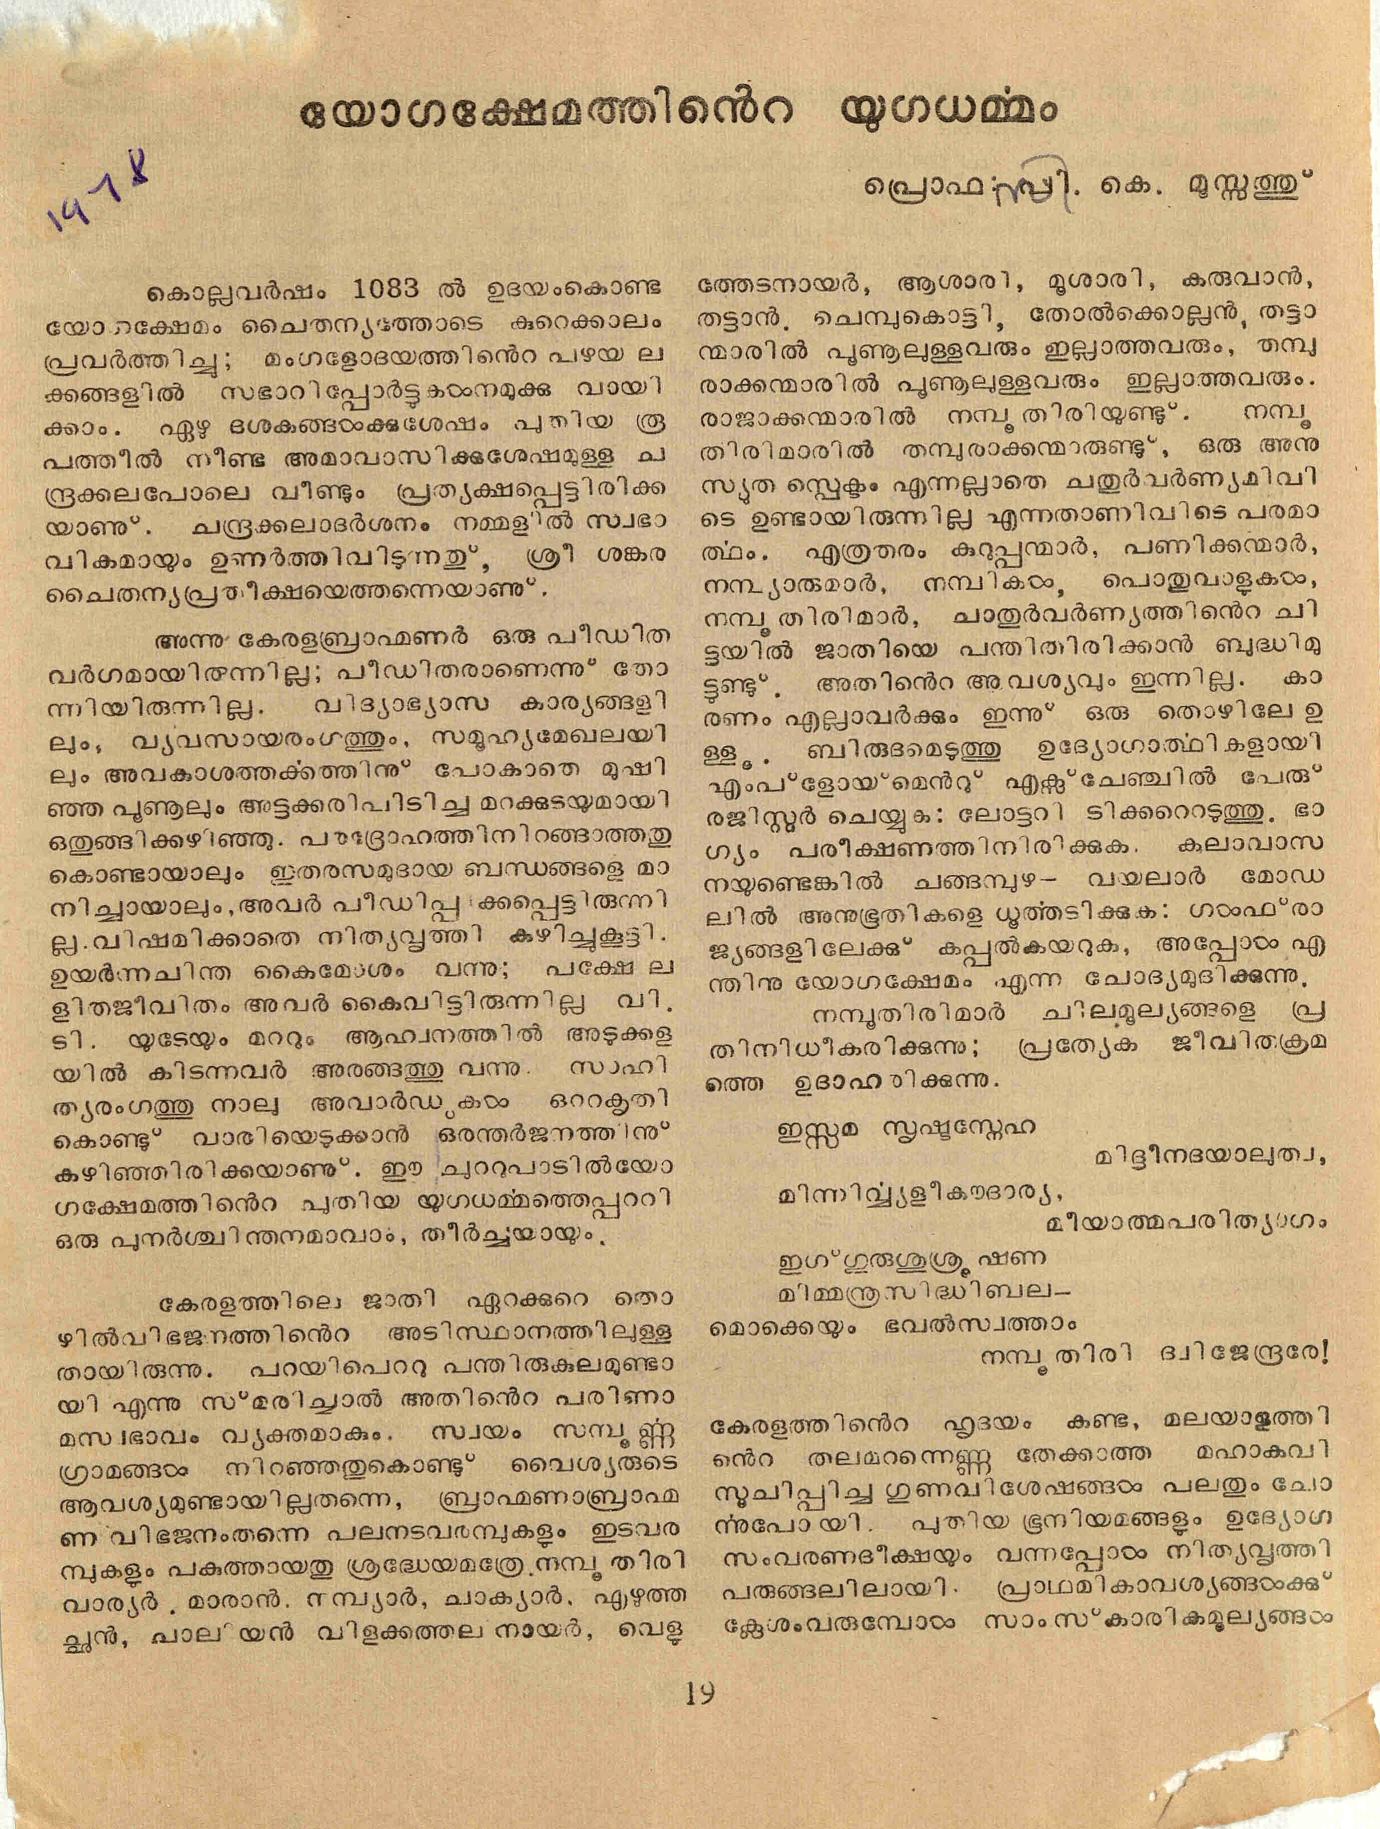 1978 - യോഗക്ഷേമത്തിൻ്റെ യുഗധർമ്മം - സി. കെ. മൂസ്സത്